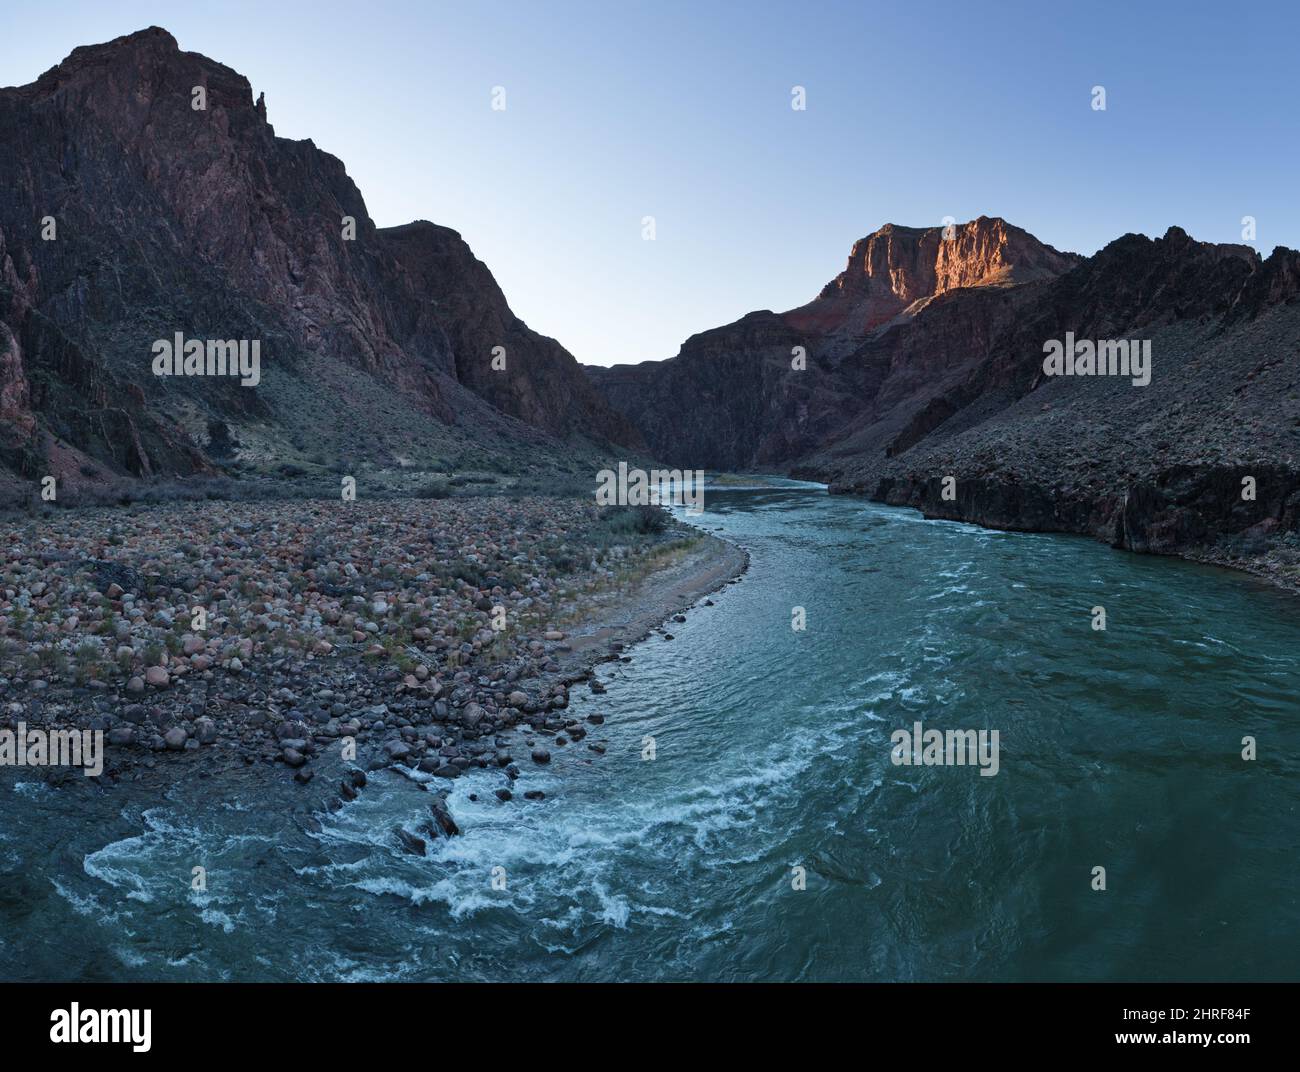 El río Colorado fluye en la garganta interior del Parque Nacional del Gran Cañón en Arizona Foto de stock